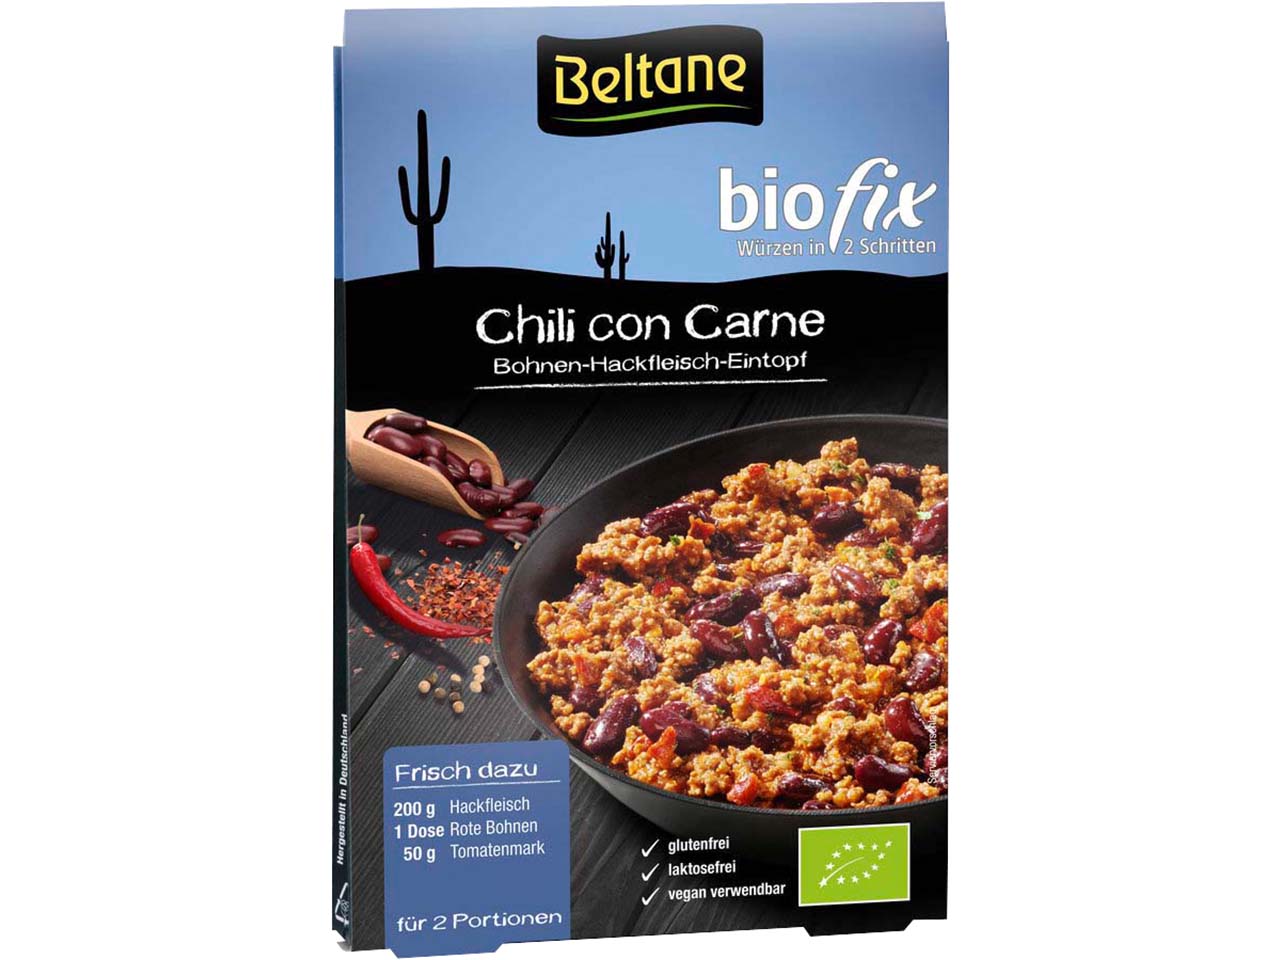 Beltane Bio-Würzmischung Chili con Carne "Biofix